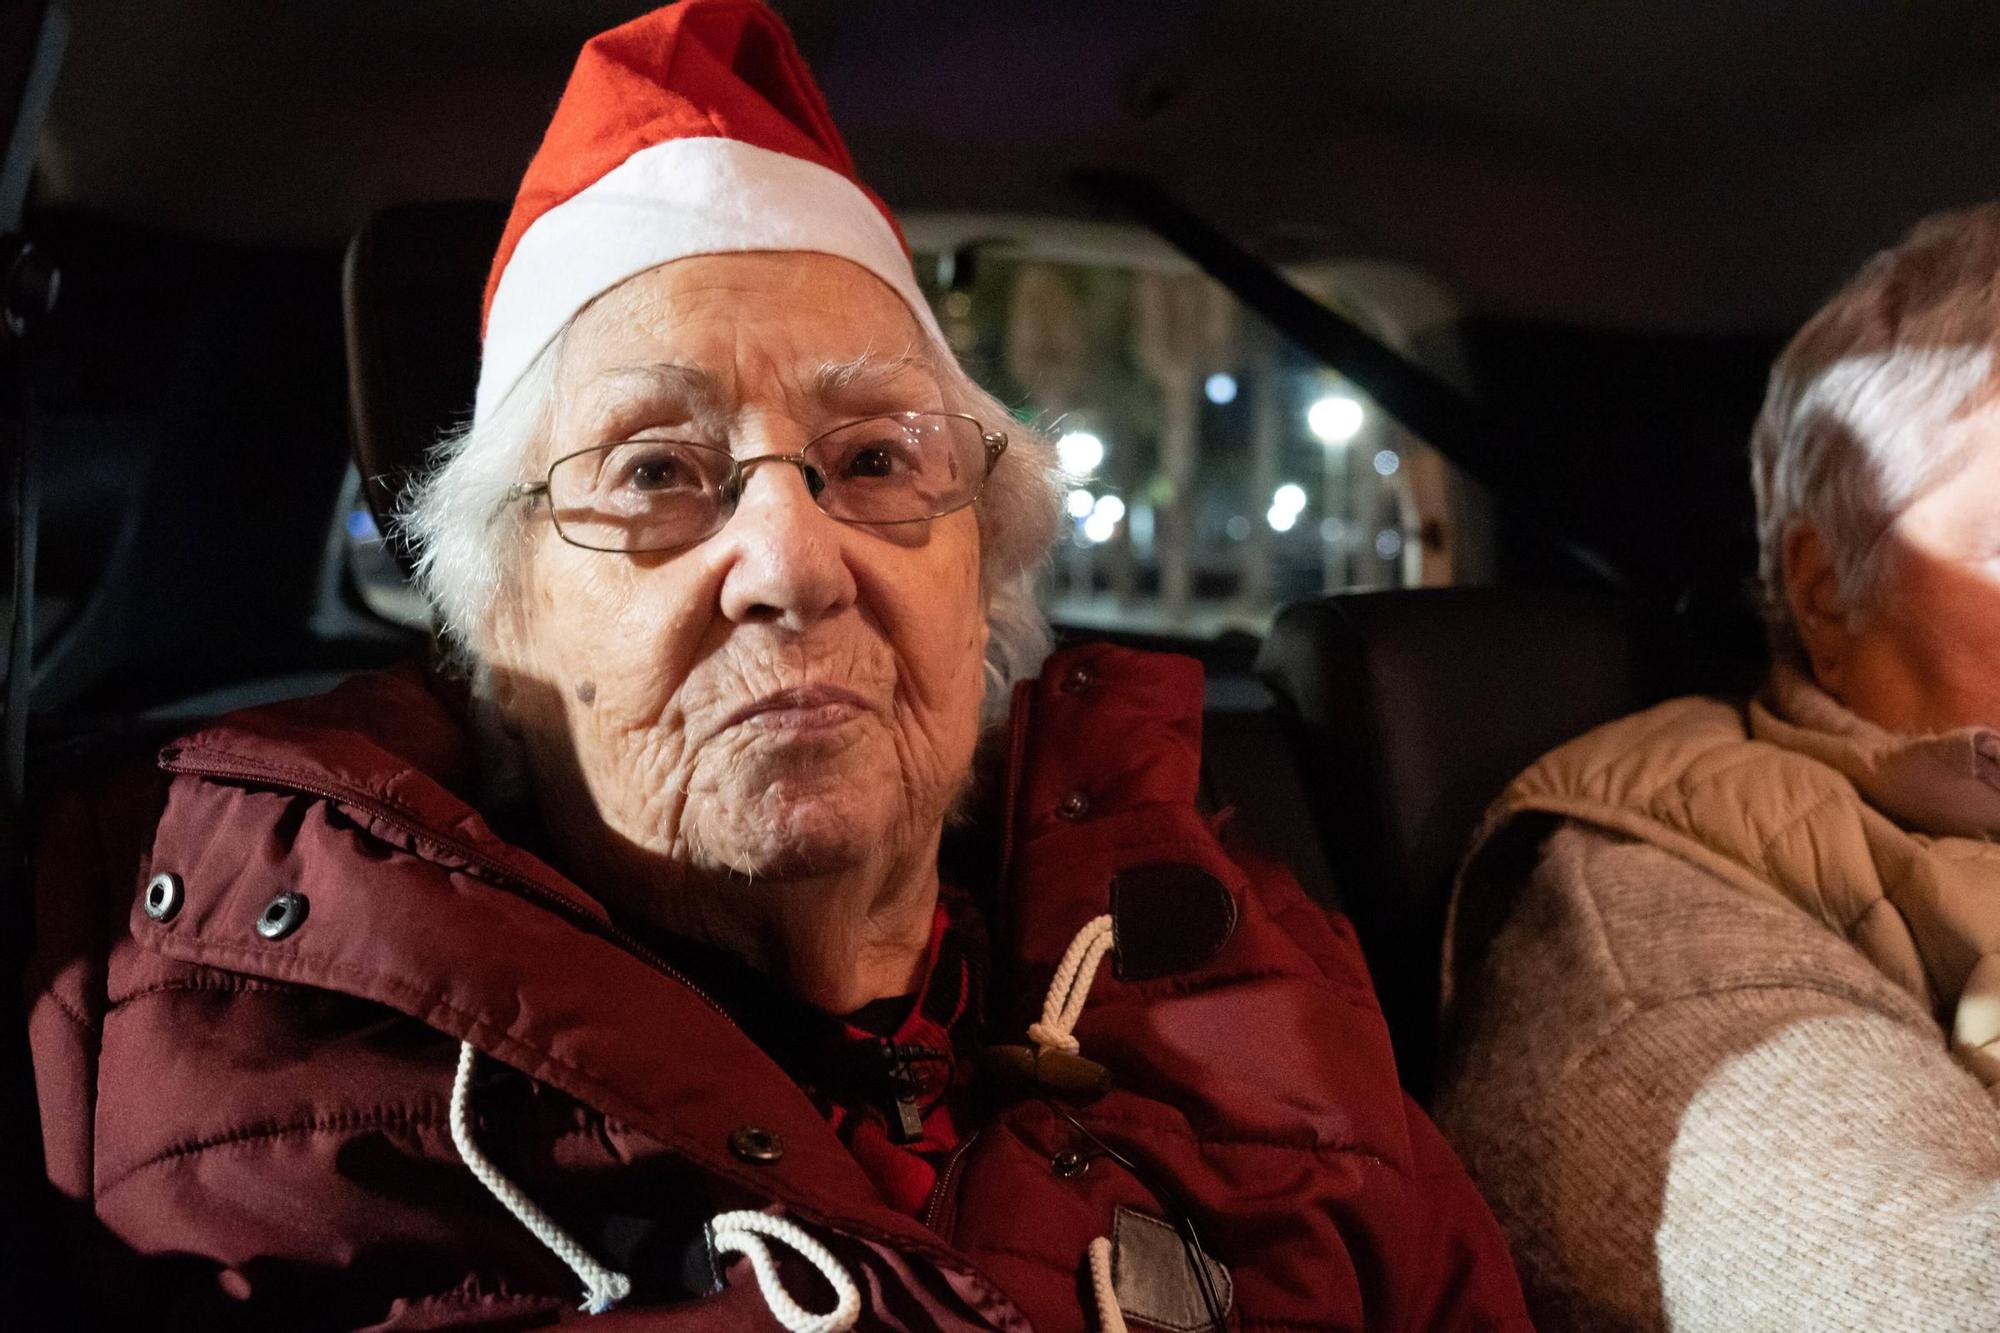 Paseo navideño en taxi por las calles de Palma: "Me hace mucha ilusión, hacía muchos años que no veía las luces de Navidad"